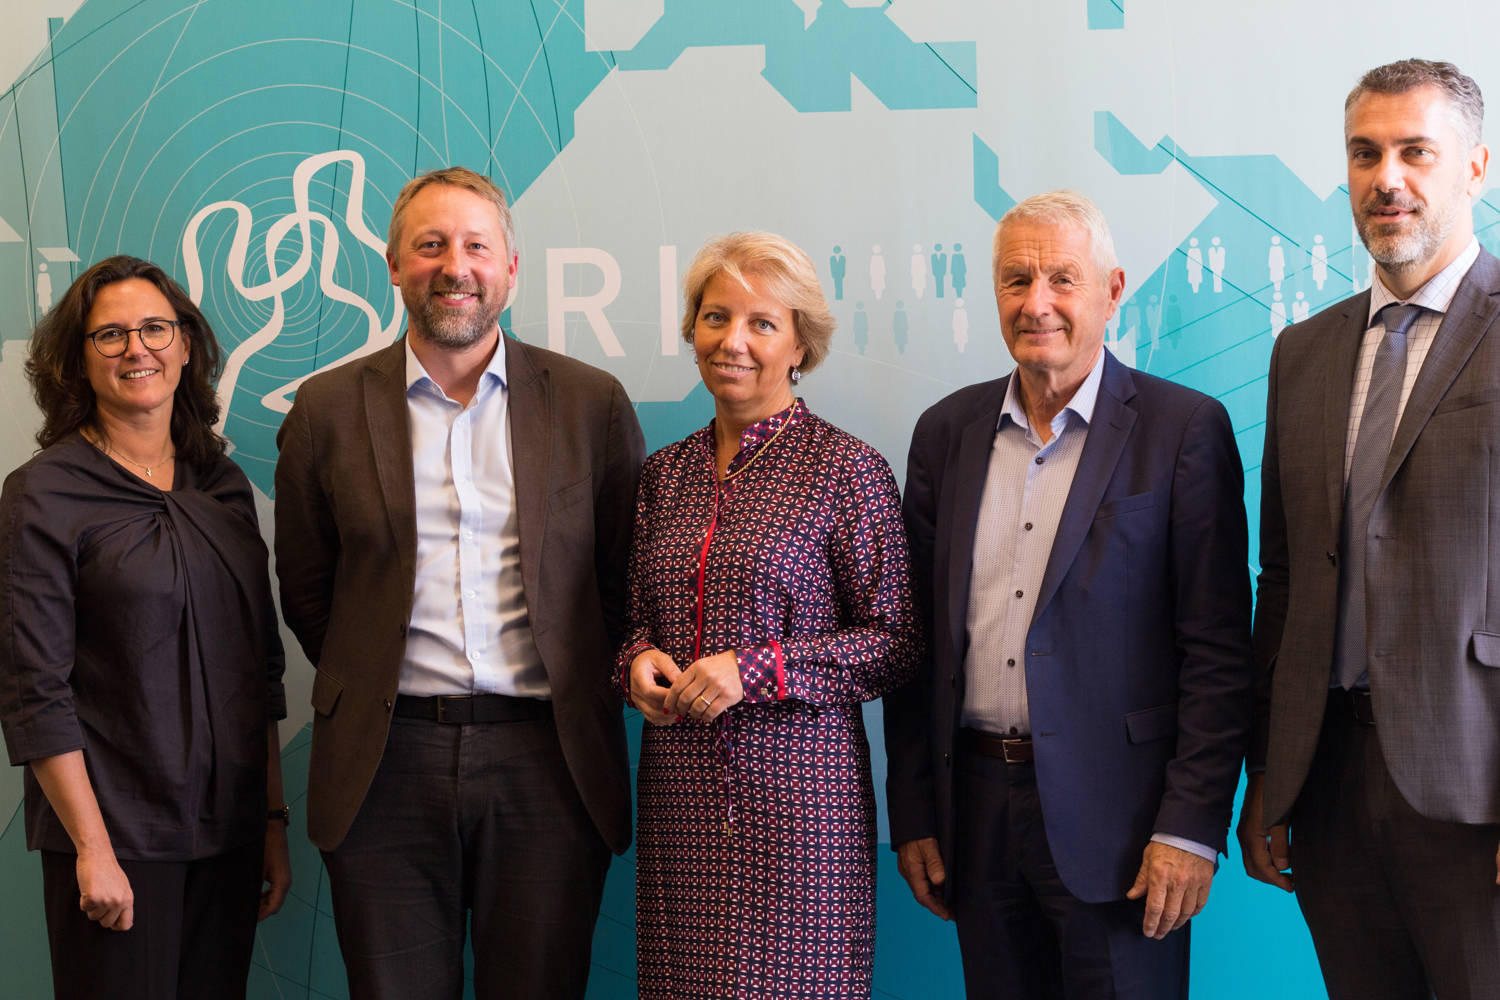 From the PRIO seminar on 10 September 2018. Pictured (from left to right): Ana Perona-Fjeldstad; Henrik Urdal; Andreja Metelko Zgombić; Thorbjørn Jagland; Hrvoje Marušić. Georgina Berry / PRIO